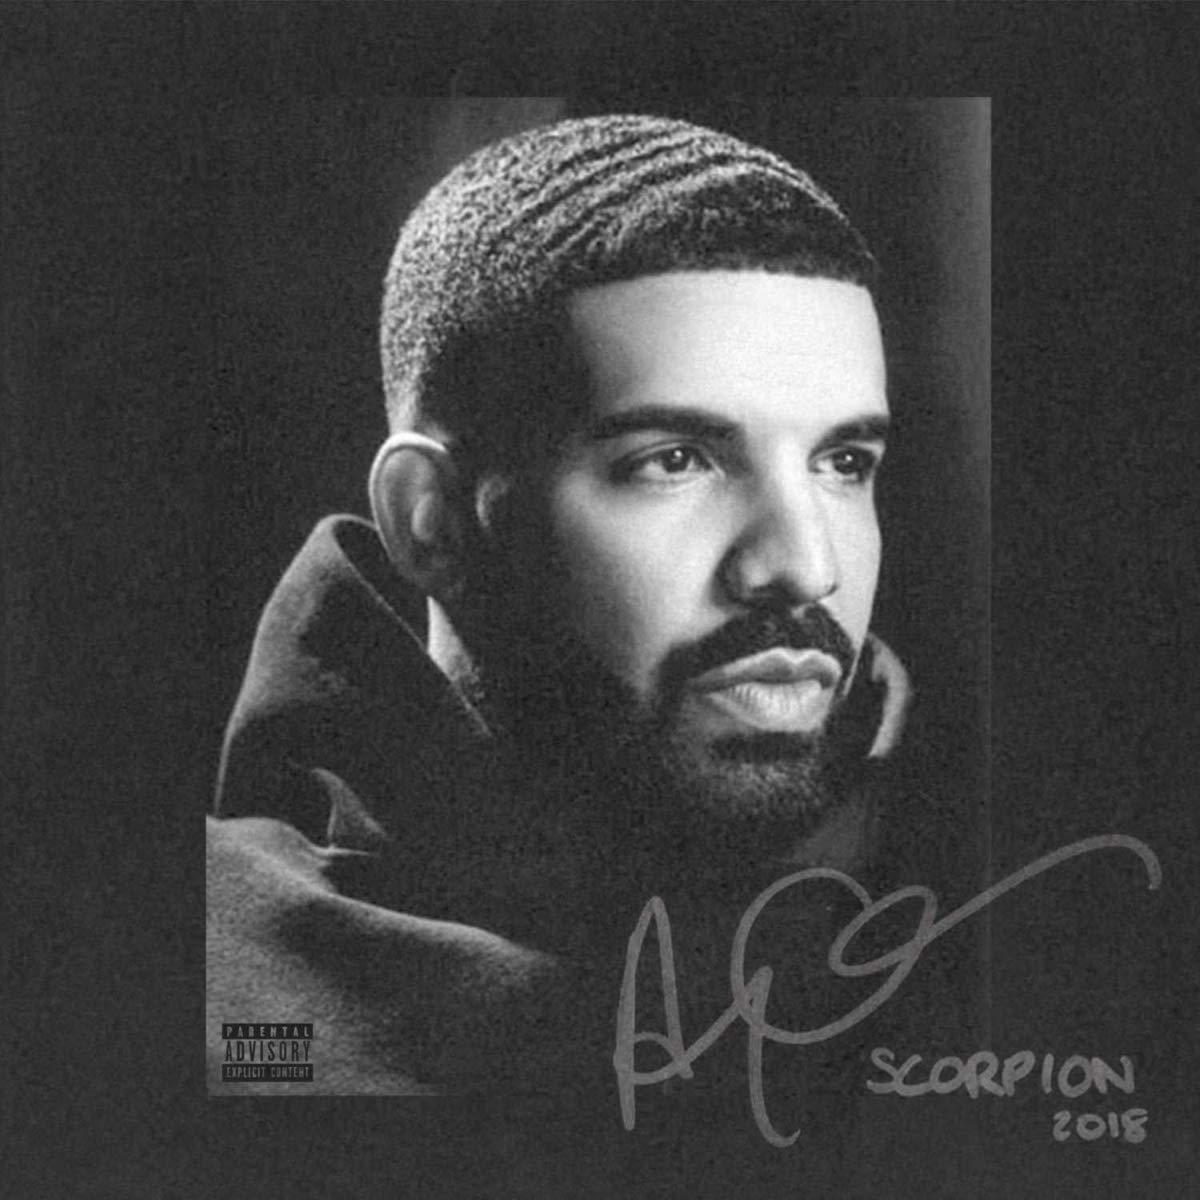 Drake "Scorpio" album cover